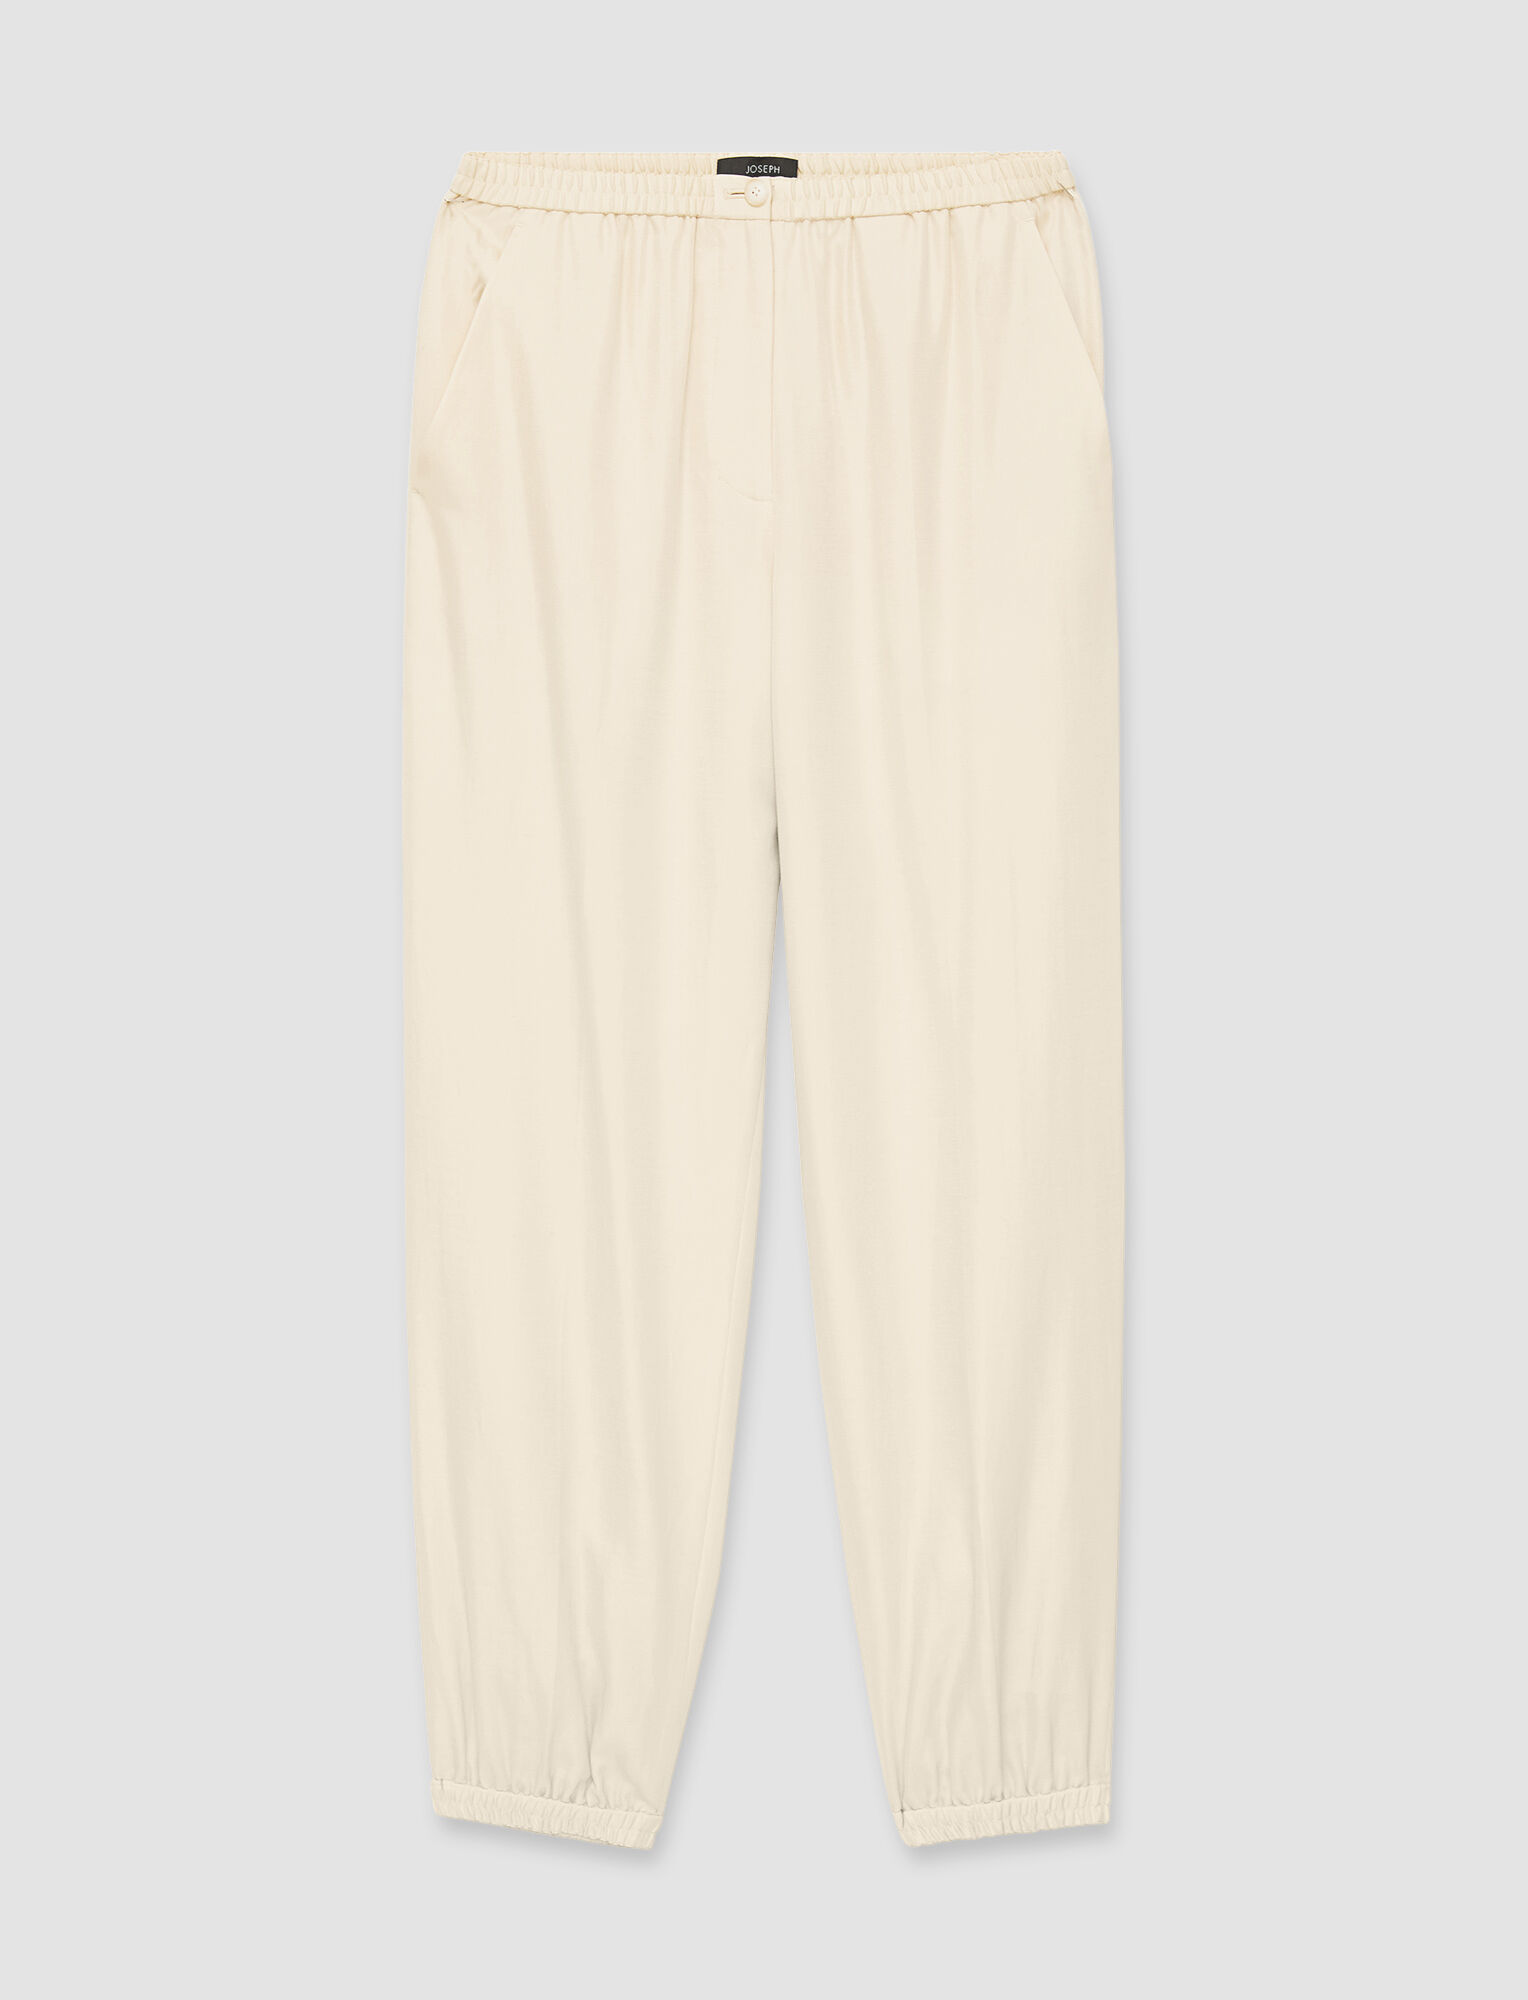 Joseph, Soft Cotton Silk Taio Trousers, in Alabaster